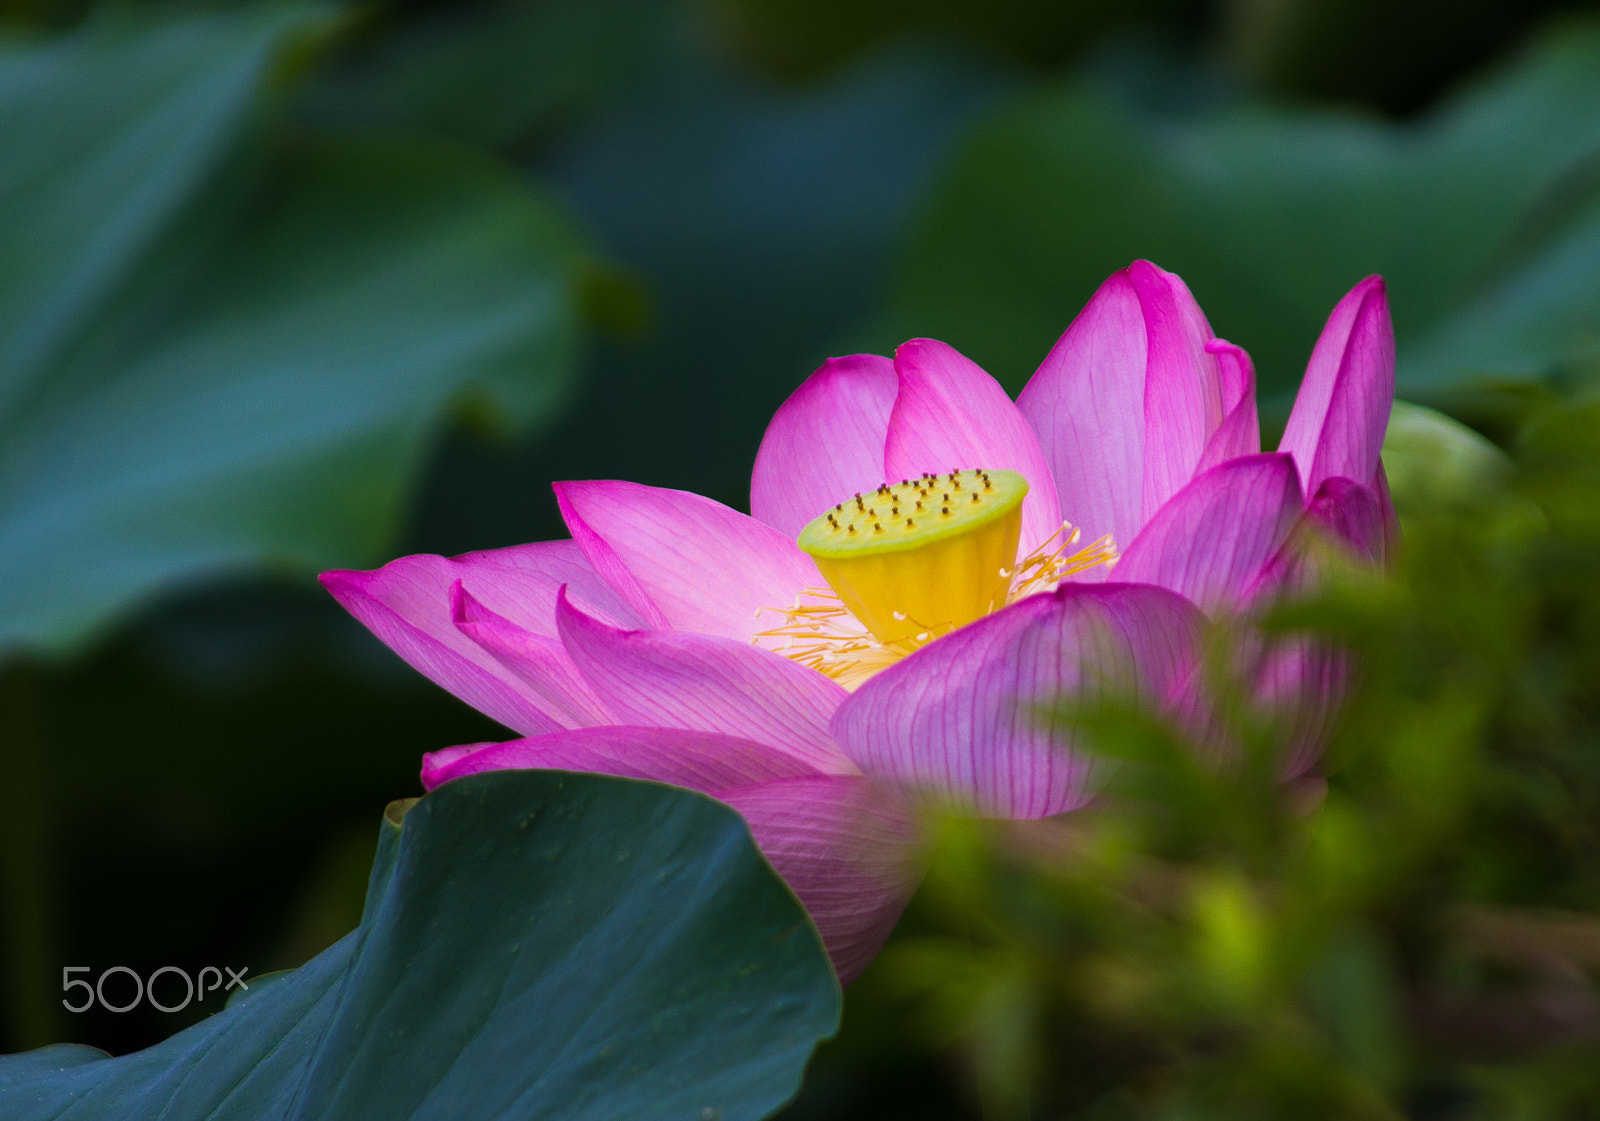 Pentax K-5 sample photo. Oga lotus in odawara, japan. photography